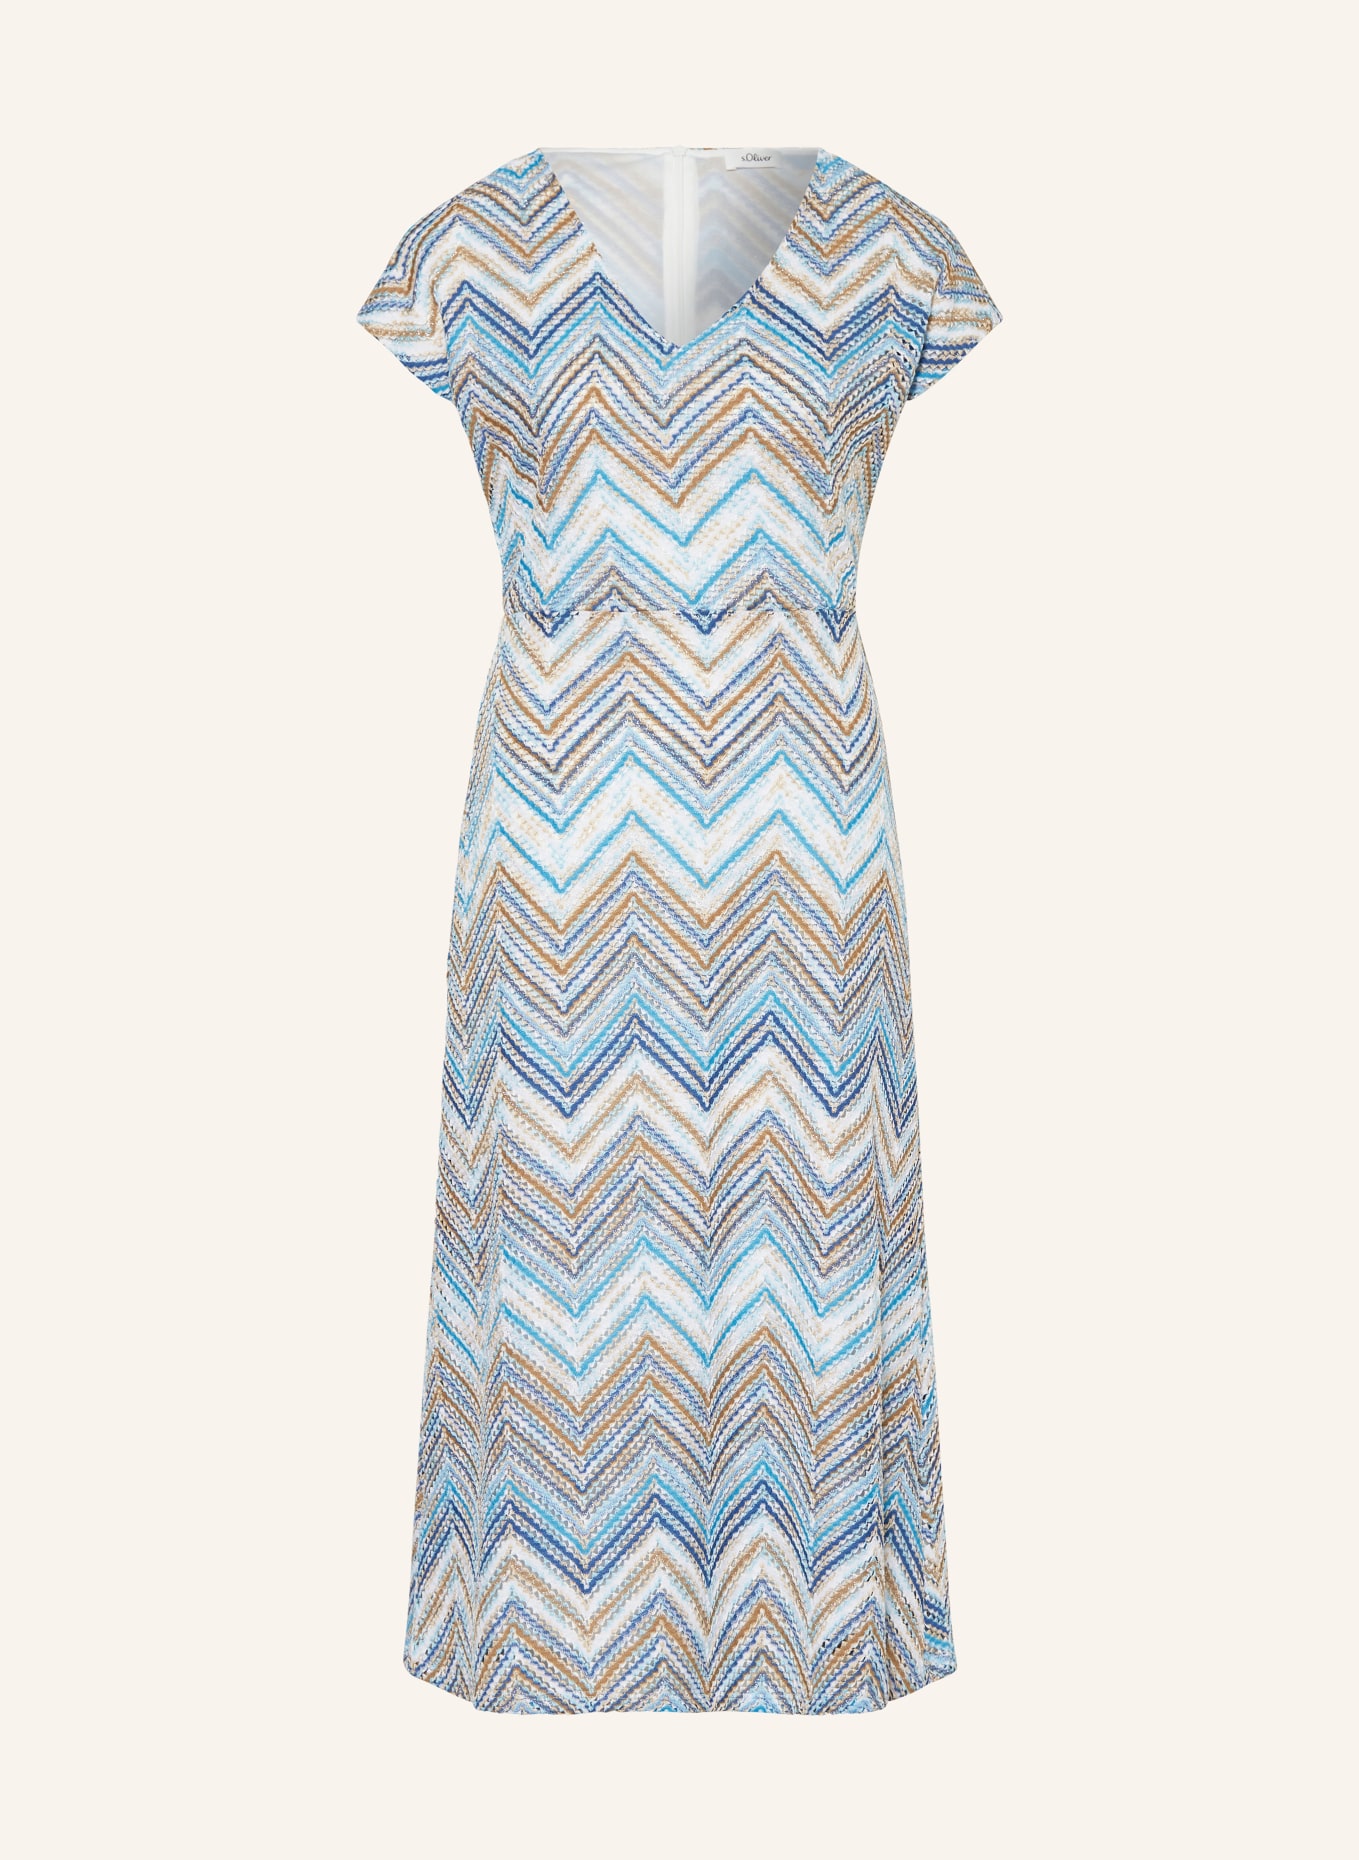 s.Oliver BLACK LABEL Knit dress, Color: LIGHT BLUE/ BEIGE/ WHITE (Image 1)